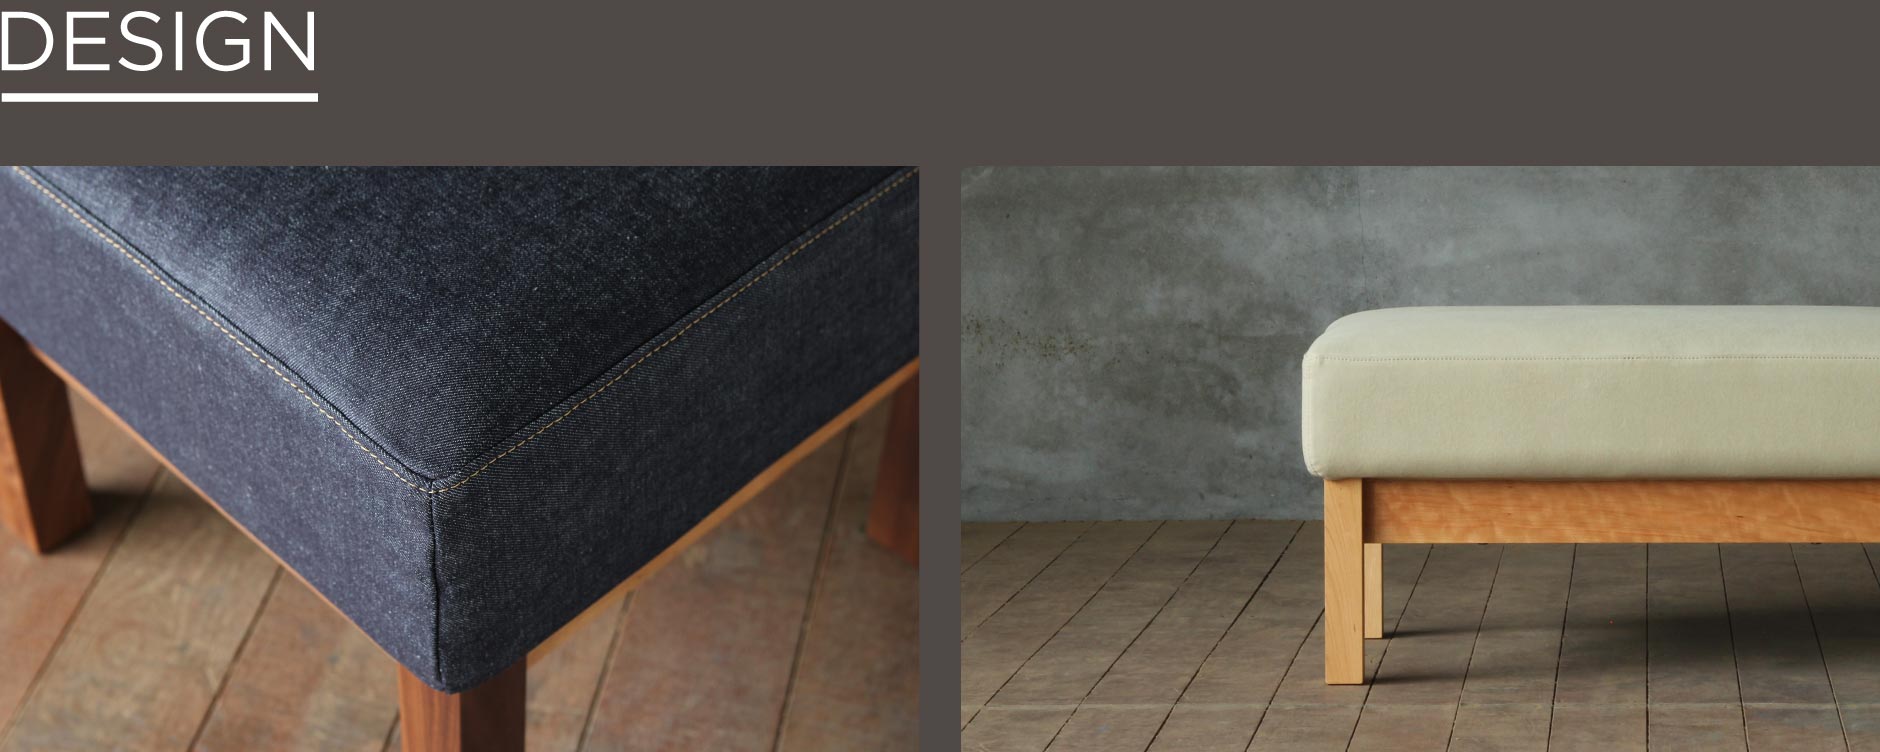 シンプルなデザインでどんなテイストにも合わせやすい無垢材オットマン。SOLID福岡の家具の中でも存在感抜群のオットマンです。